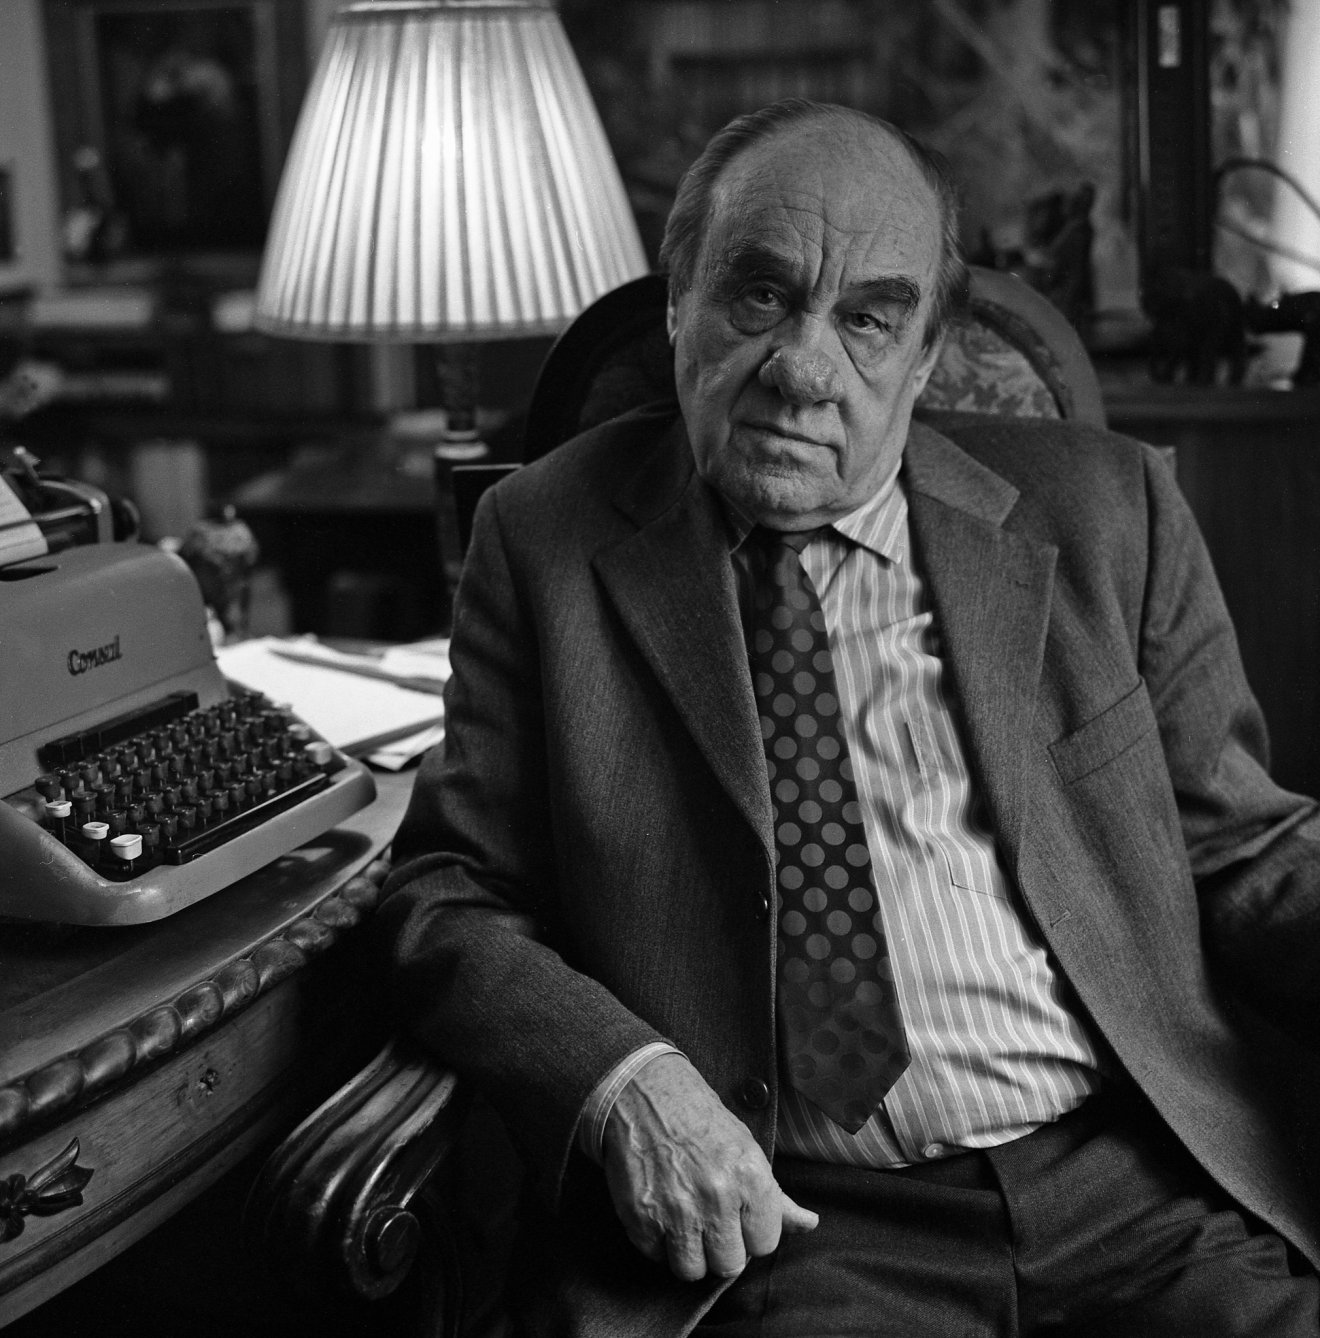 Elhunyt Duba Gyula Kossuth-díjas felvidéki író, aki gazdag szépprózai életművet hagyott maga után